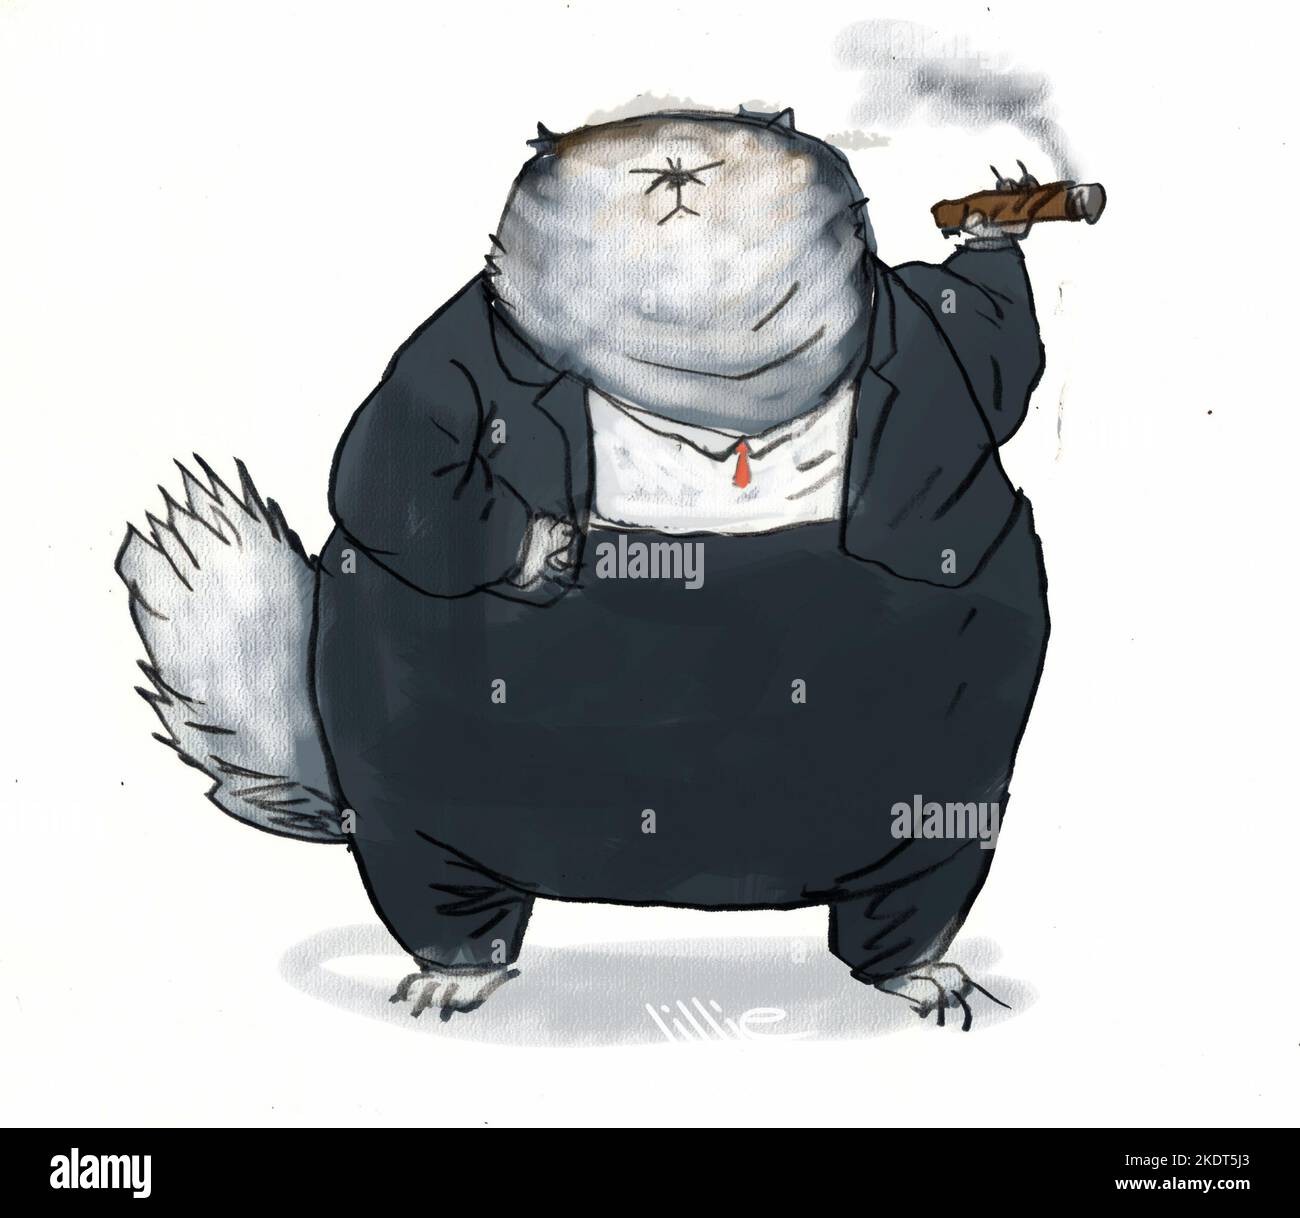 Konzeptkunst, fette Katze in einem Anzug, der eine Zigarre raucht, illustriert den populären englischen Idiom-Satz für eine wohlhabende und mächtige Person, besonders im Geschäft Stockfoto